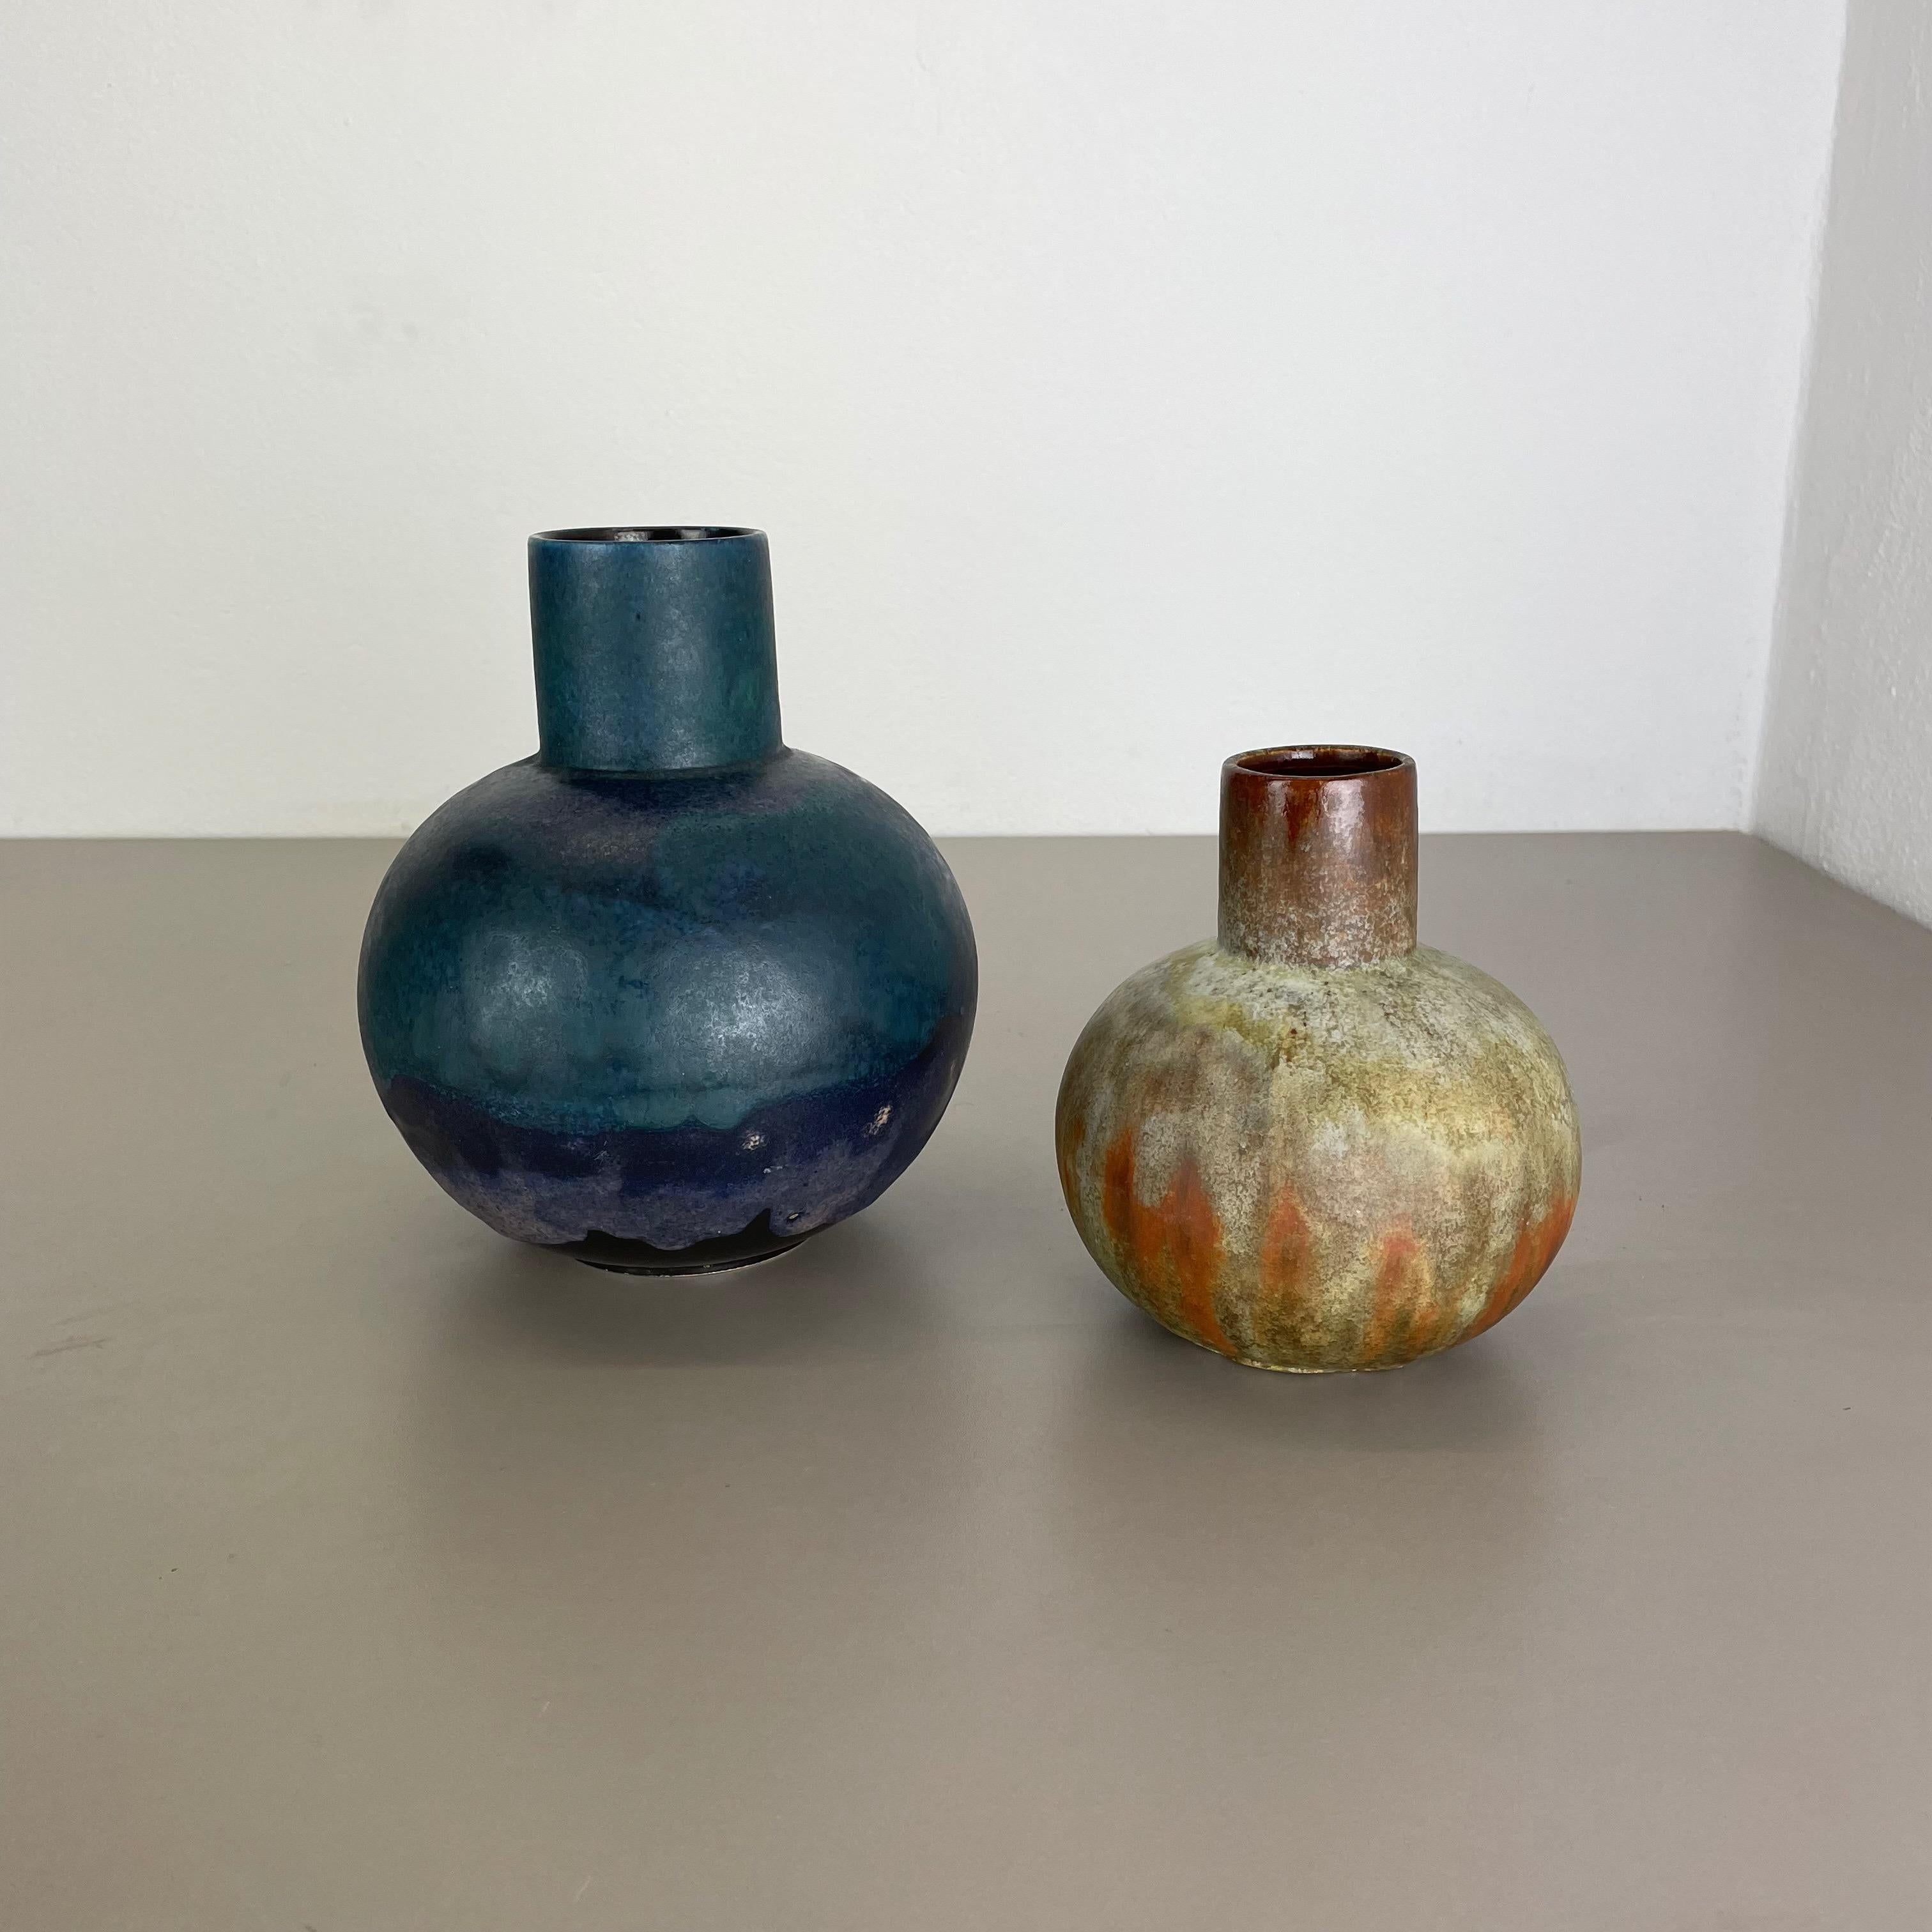 Artikel:

Satz mit 2 Vasen


Produzent:

Ruscha, Deutschland



Jahrzehnt:

1960s


Beschreibung:

Dieses originelle Vintage-Vasen-Set wurde in den 1960er Jahren von Ruscha in Deutschland entworfen und hergestellt. Dieses Angebot enthält ein Set von